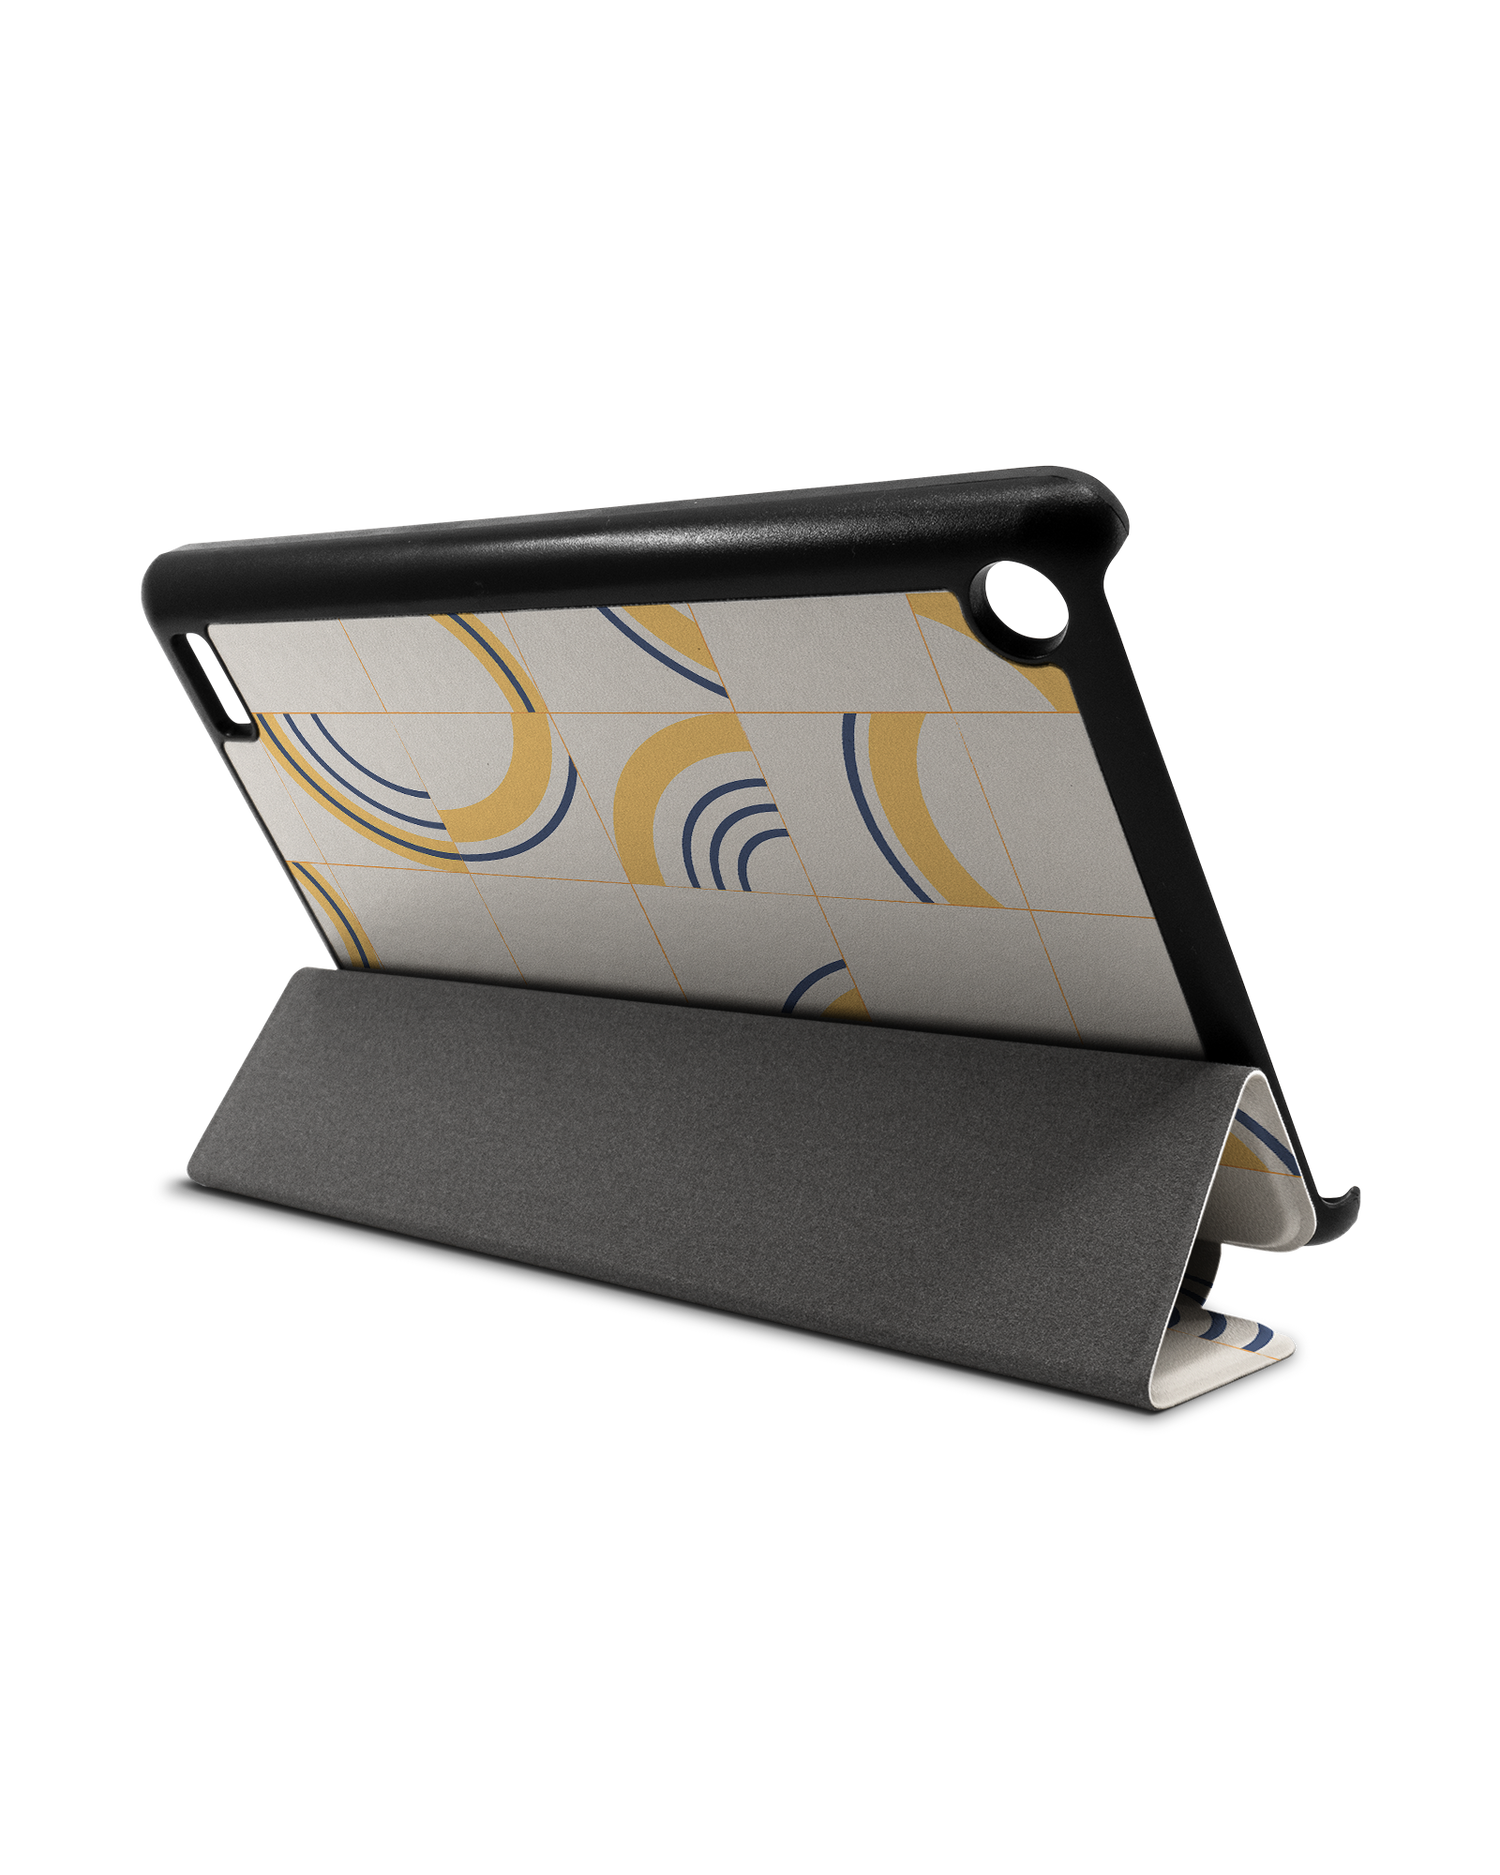 Spliced Circles Tablet Smart Case für Amazon Fire 7: Aufgestellt im Querformat